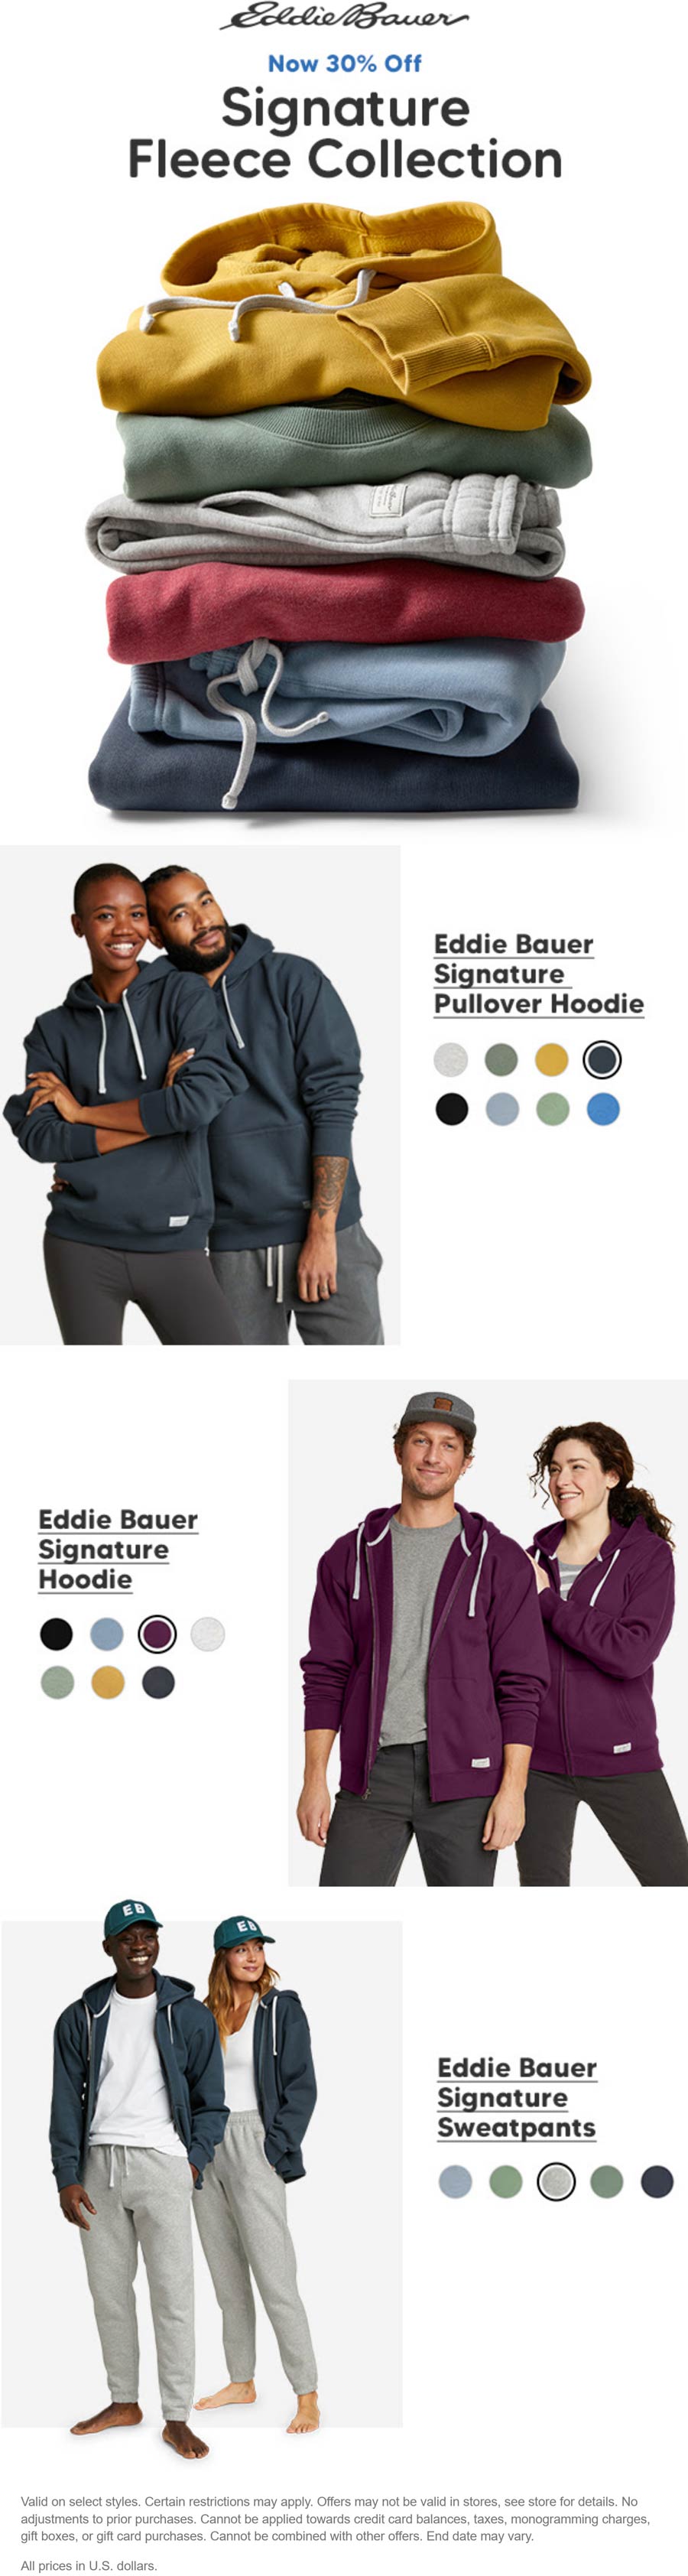 Eddie Bauer stores Coupon  30% off signature fleece collection at Eddie Bauer #eddiebauer 